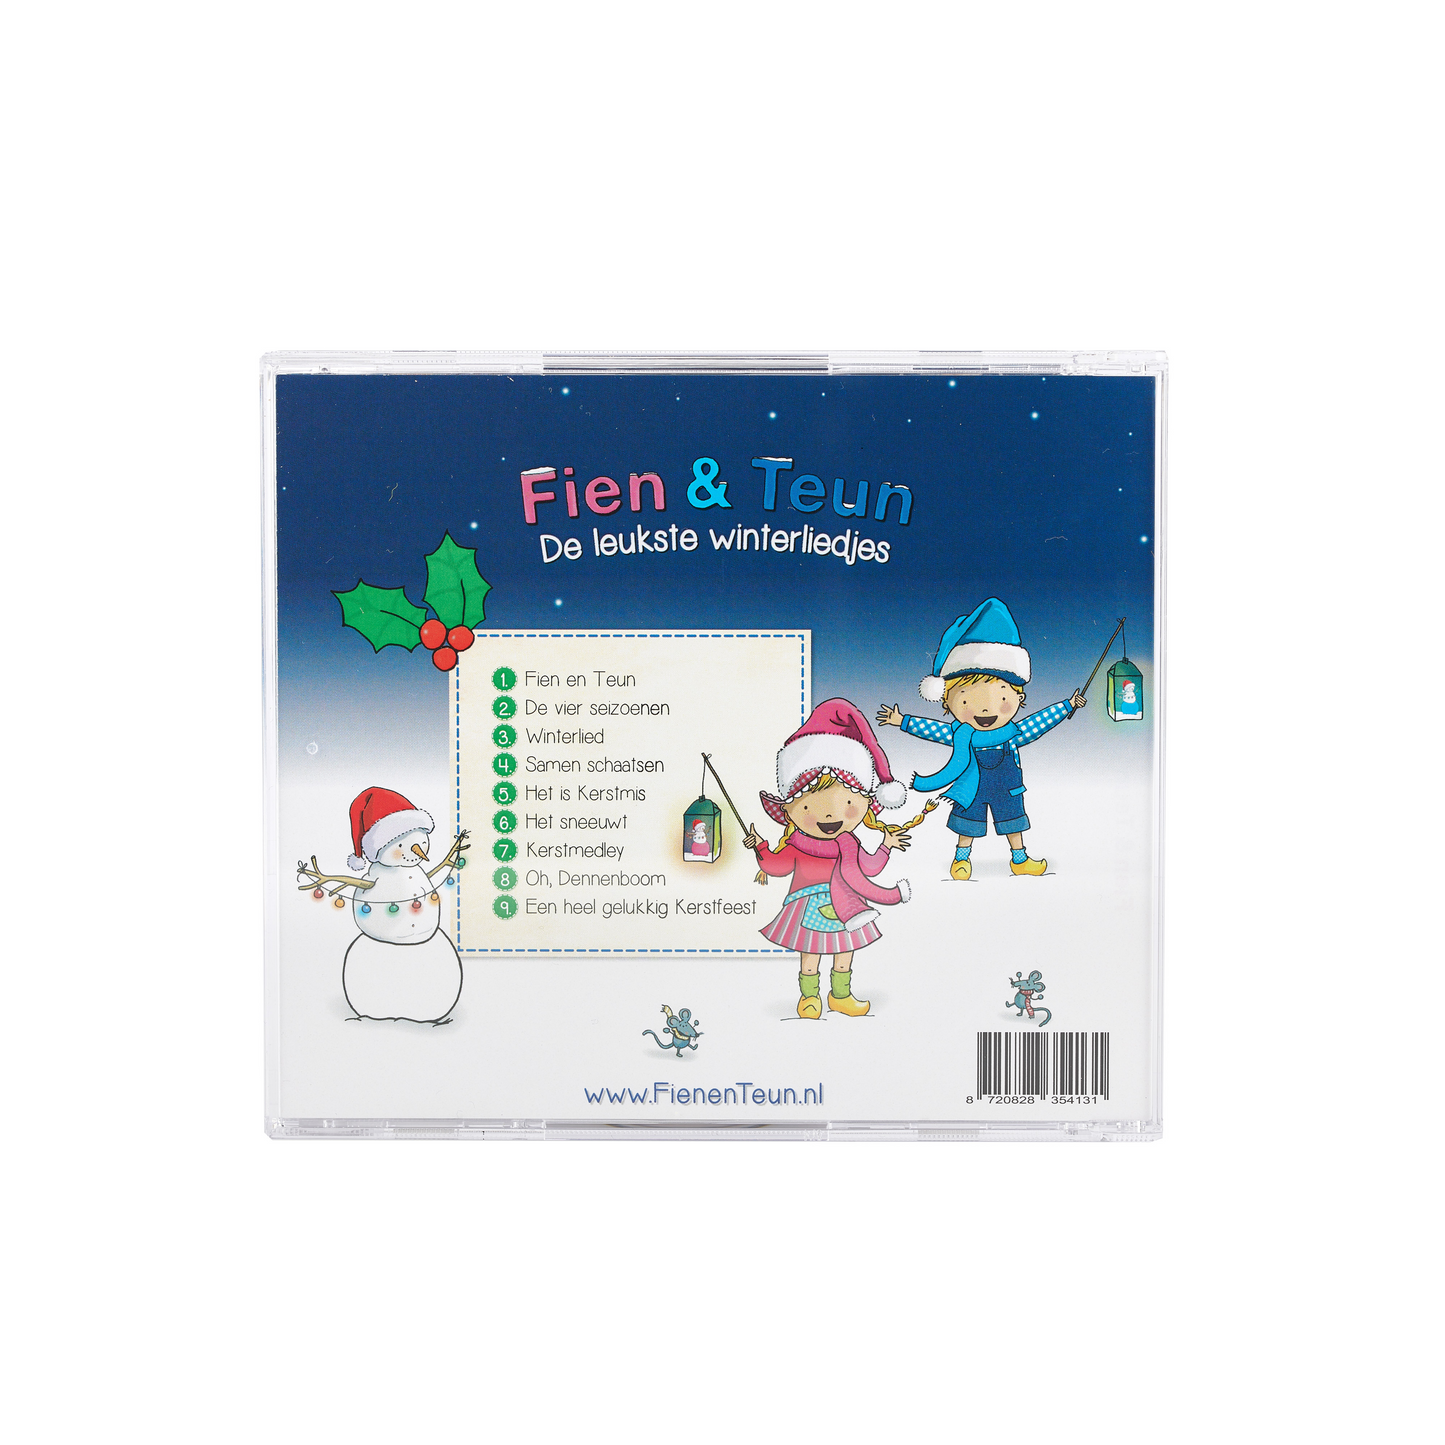 Fien & Teun - CD - The best winter songs